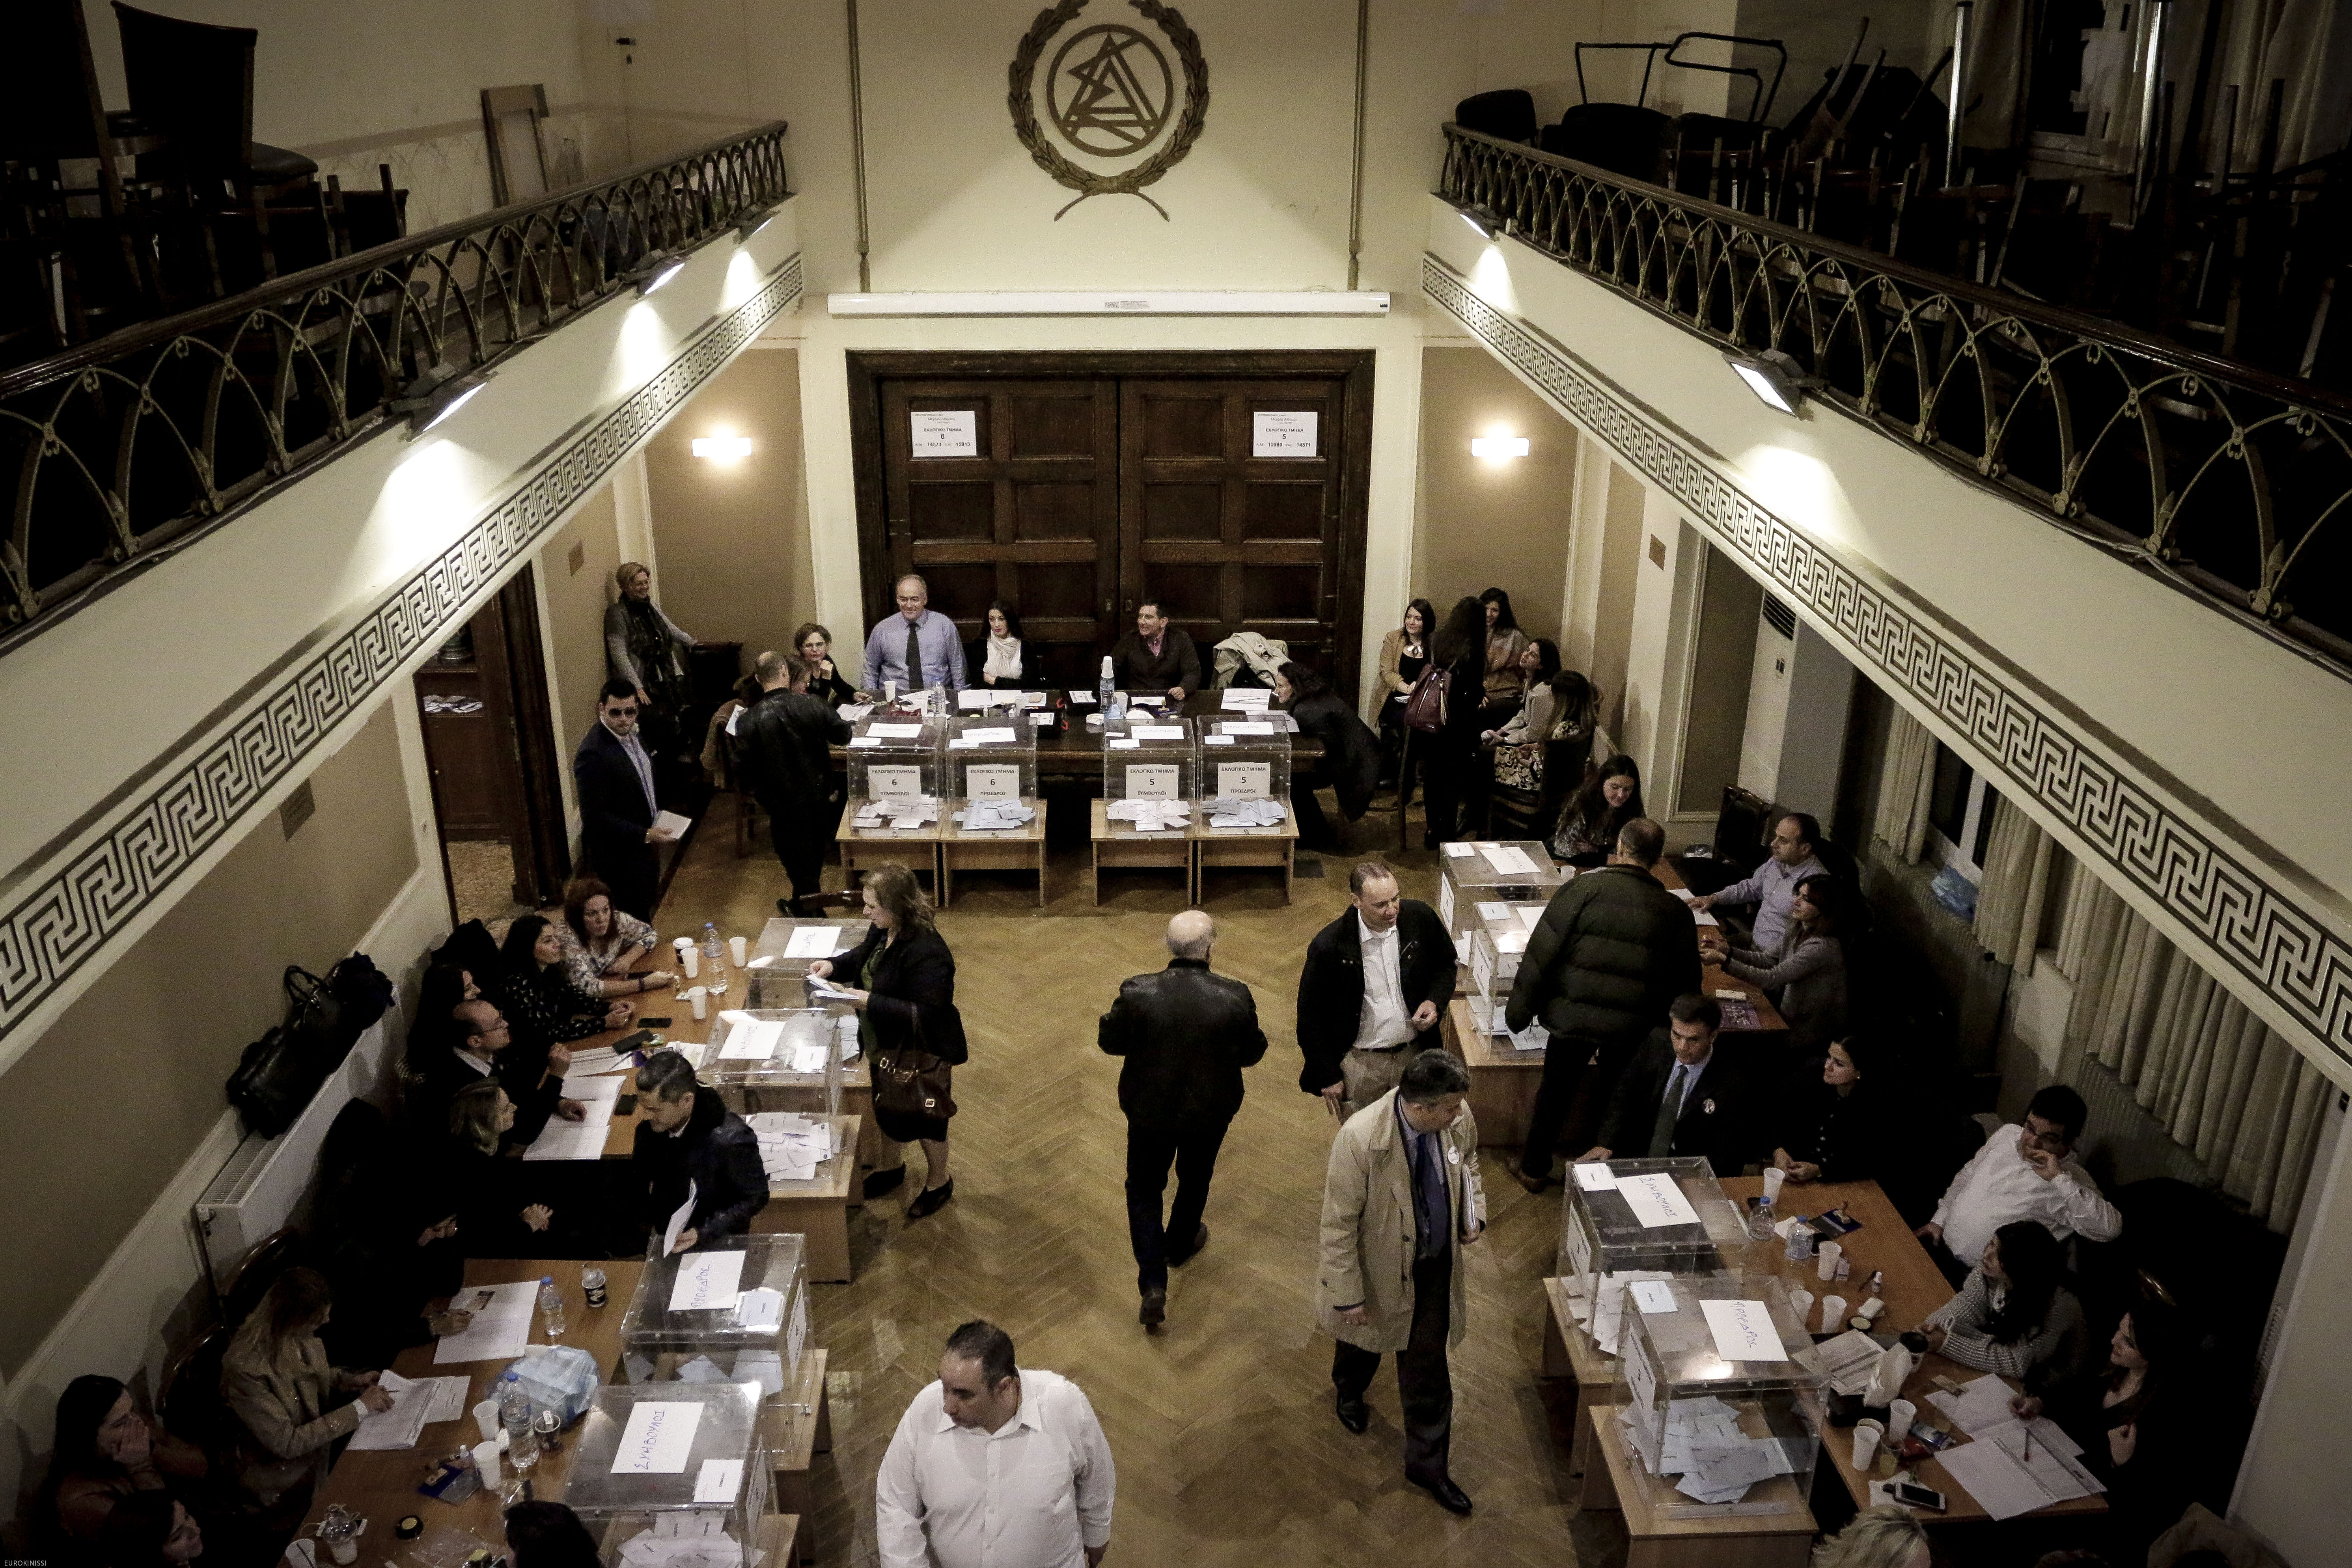 Παρατάθηκε η διεξαγωγή των εκλογών στον Δικηγορικό Σύλλογο Αθηνών